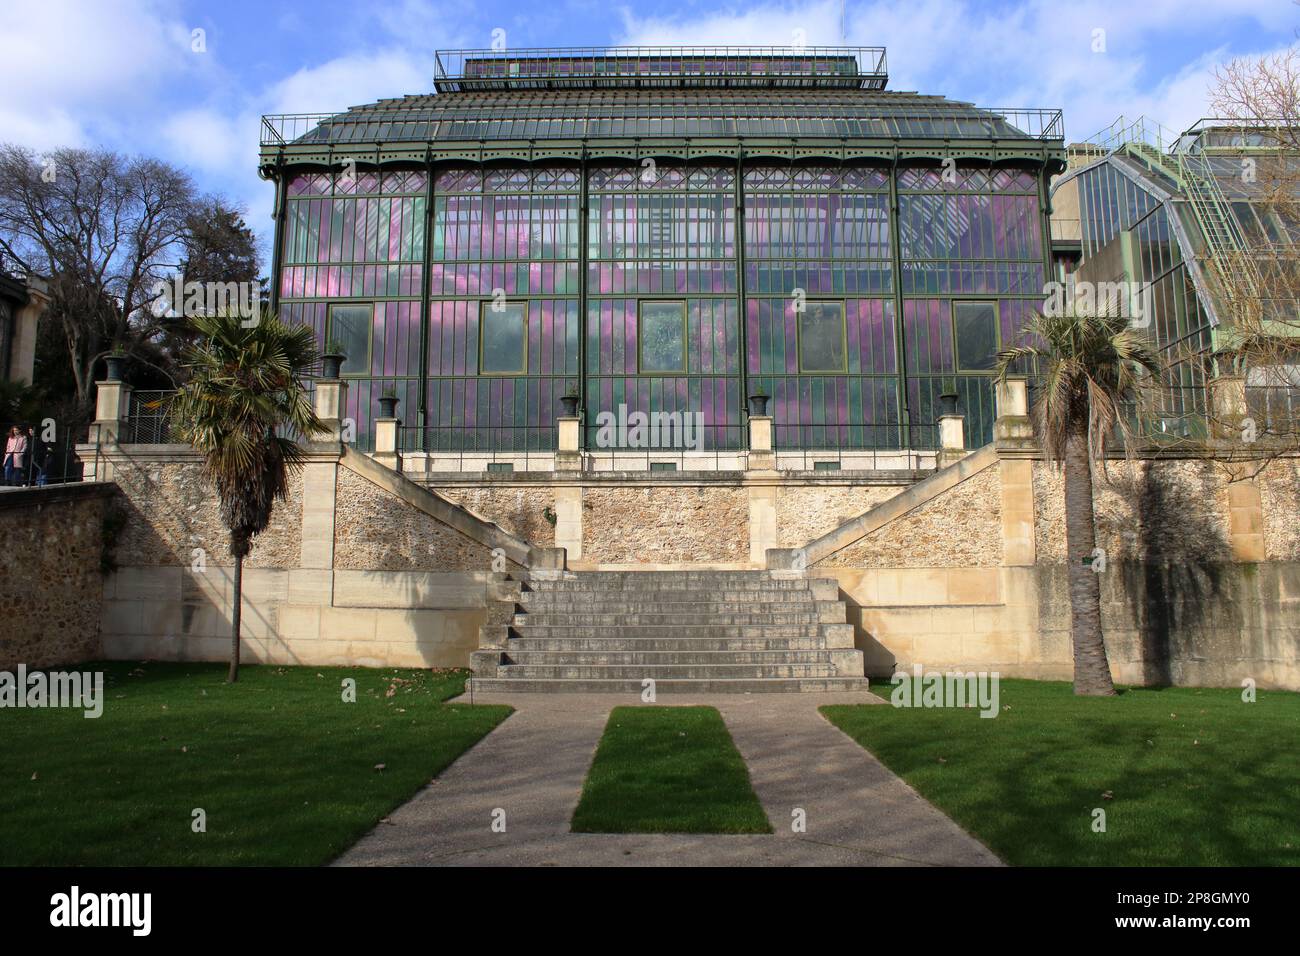 Vue sur la serre en fer et en verre Mexicaine construite en 1834 par l'architecte Rohault de Fleury situé au jardin des plantes Paris France. Banque D'Images